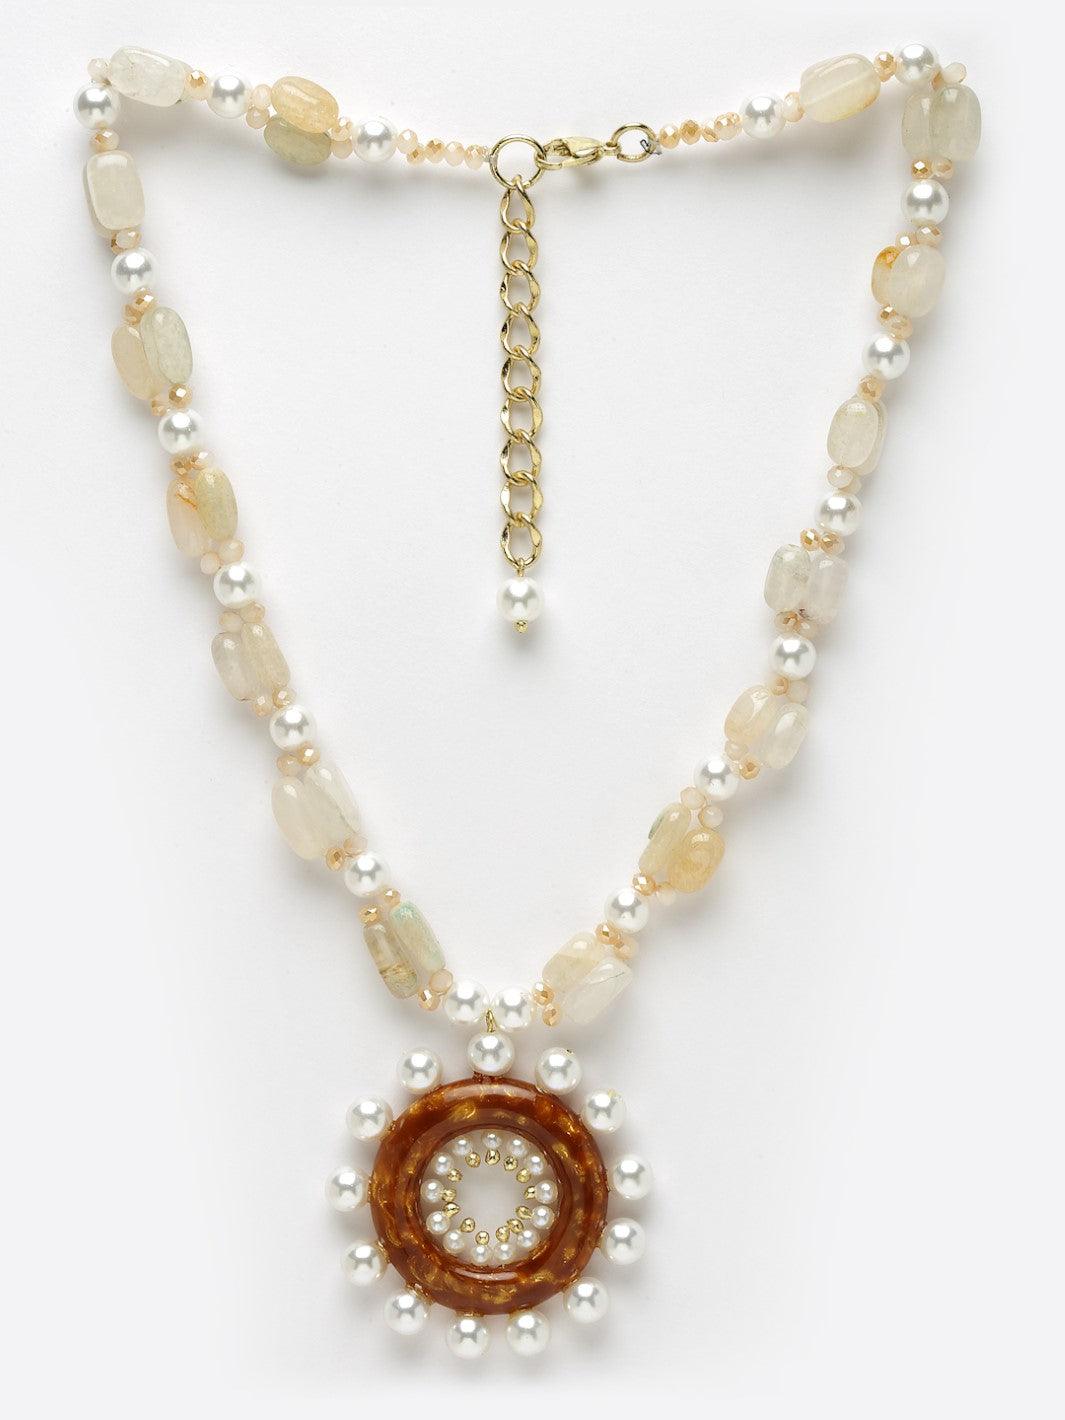 Sunshine Necklace with Semi precious stones - Bijoux by Priya